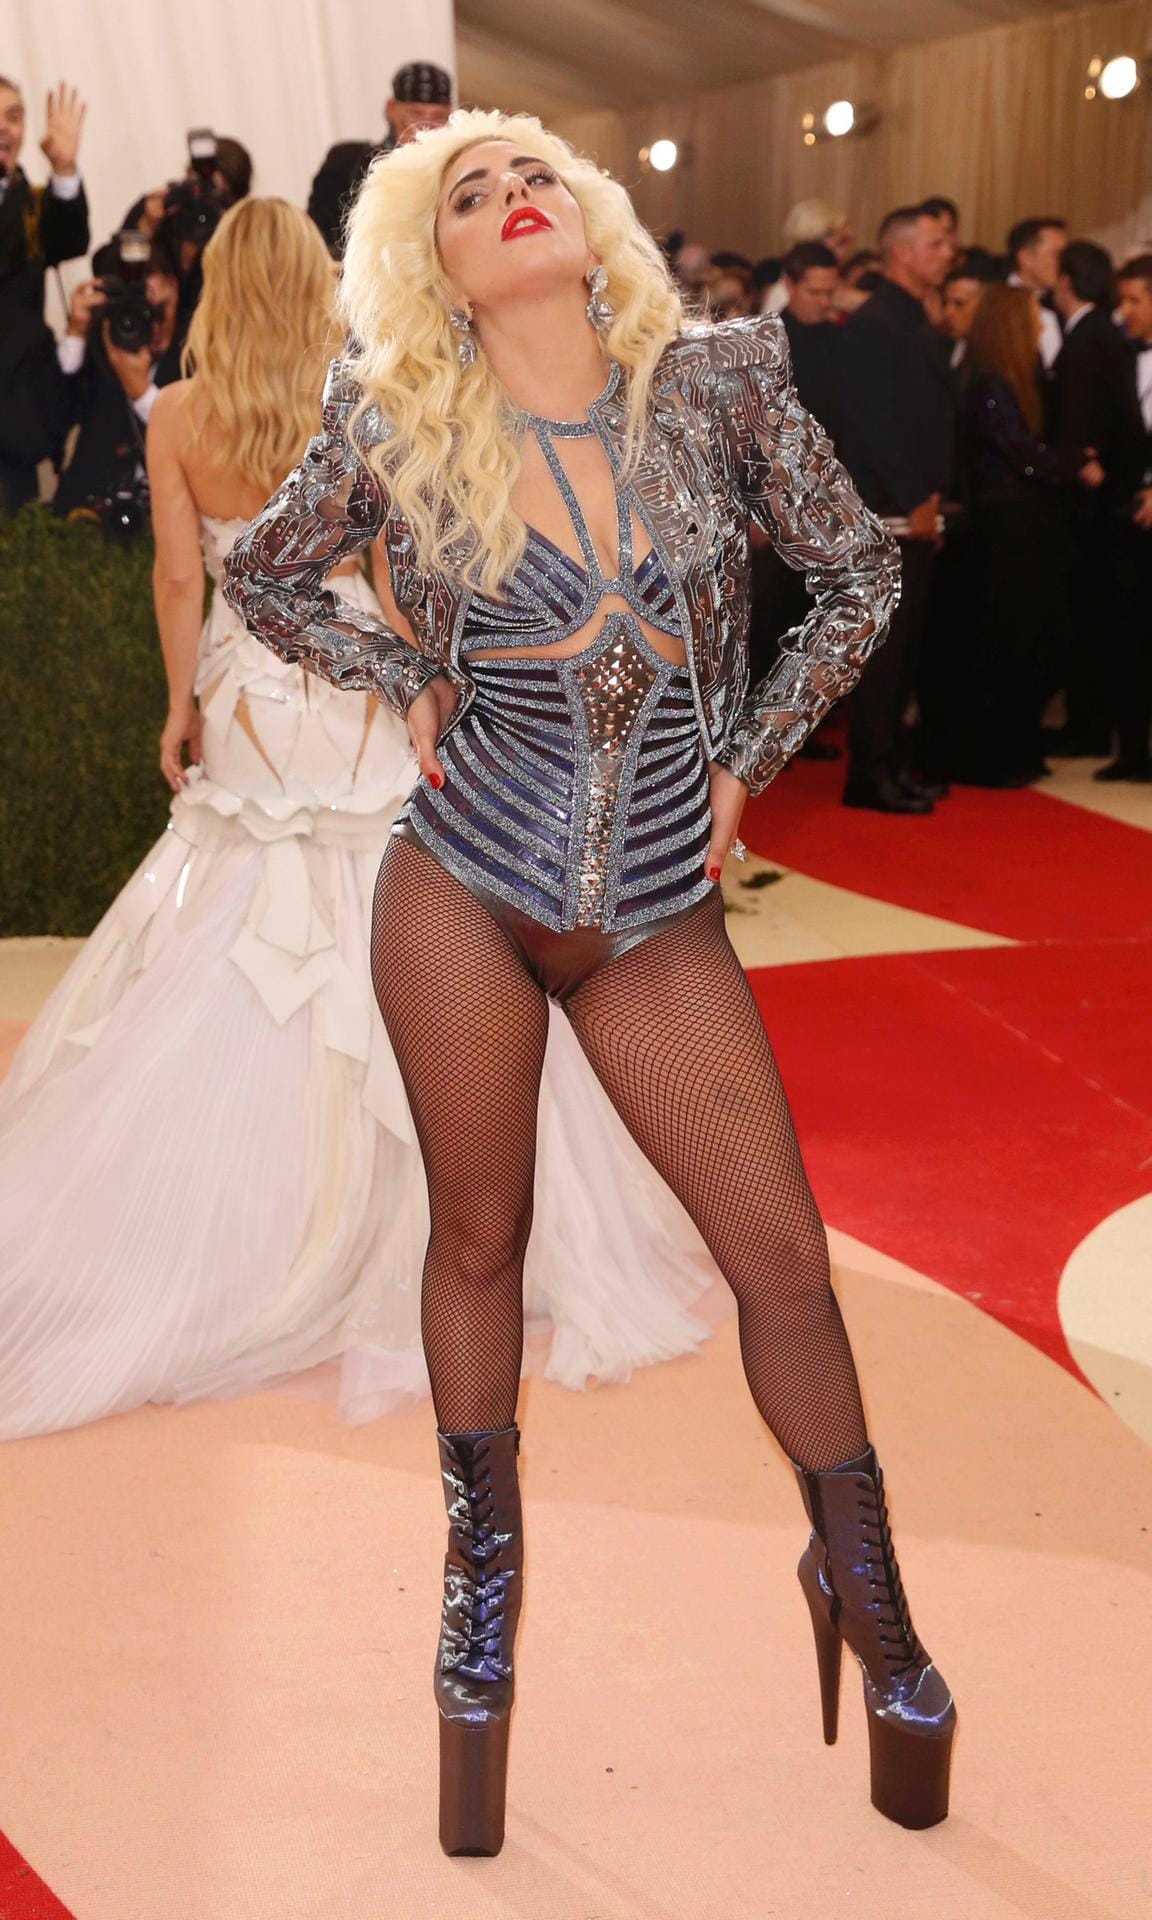 Gagas hosenloses Outfit - auch von vorne gewöhnungsbedürftig.